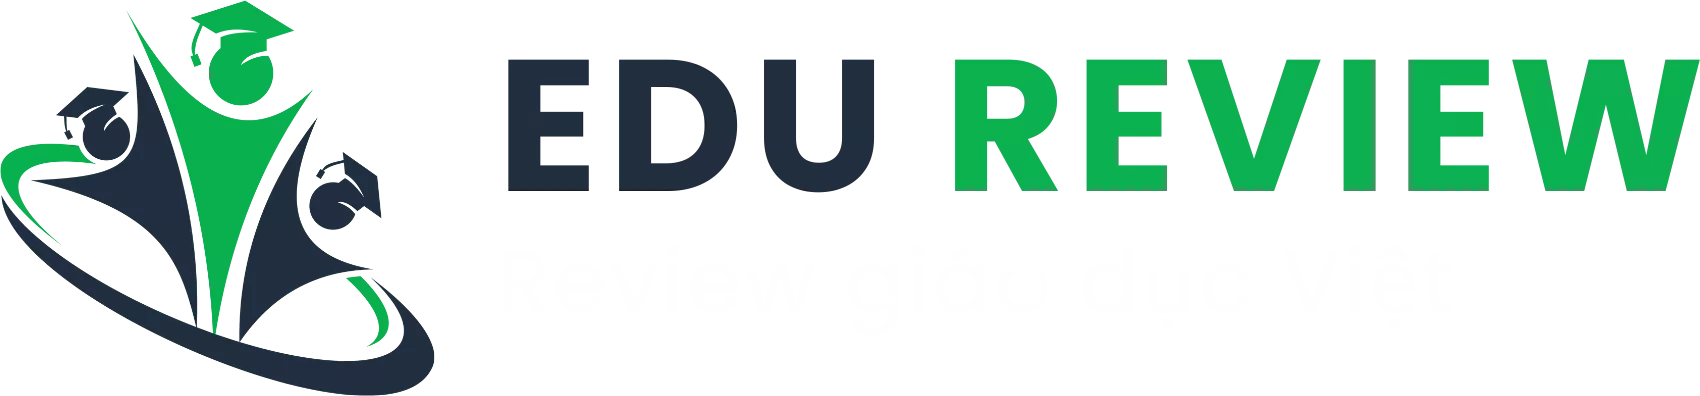 Logo Edureview white